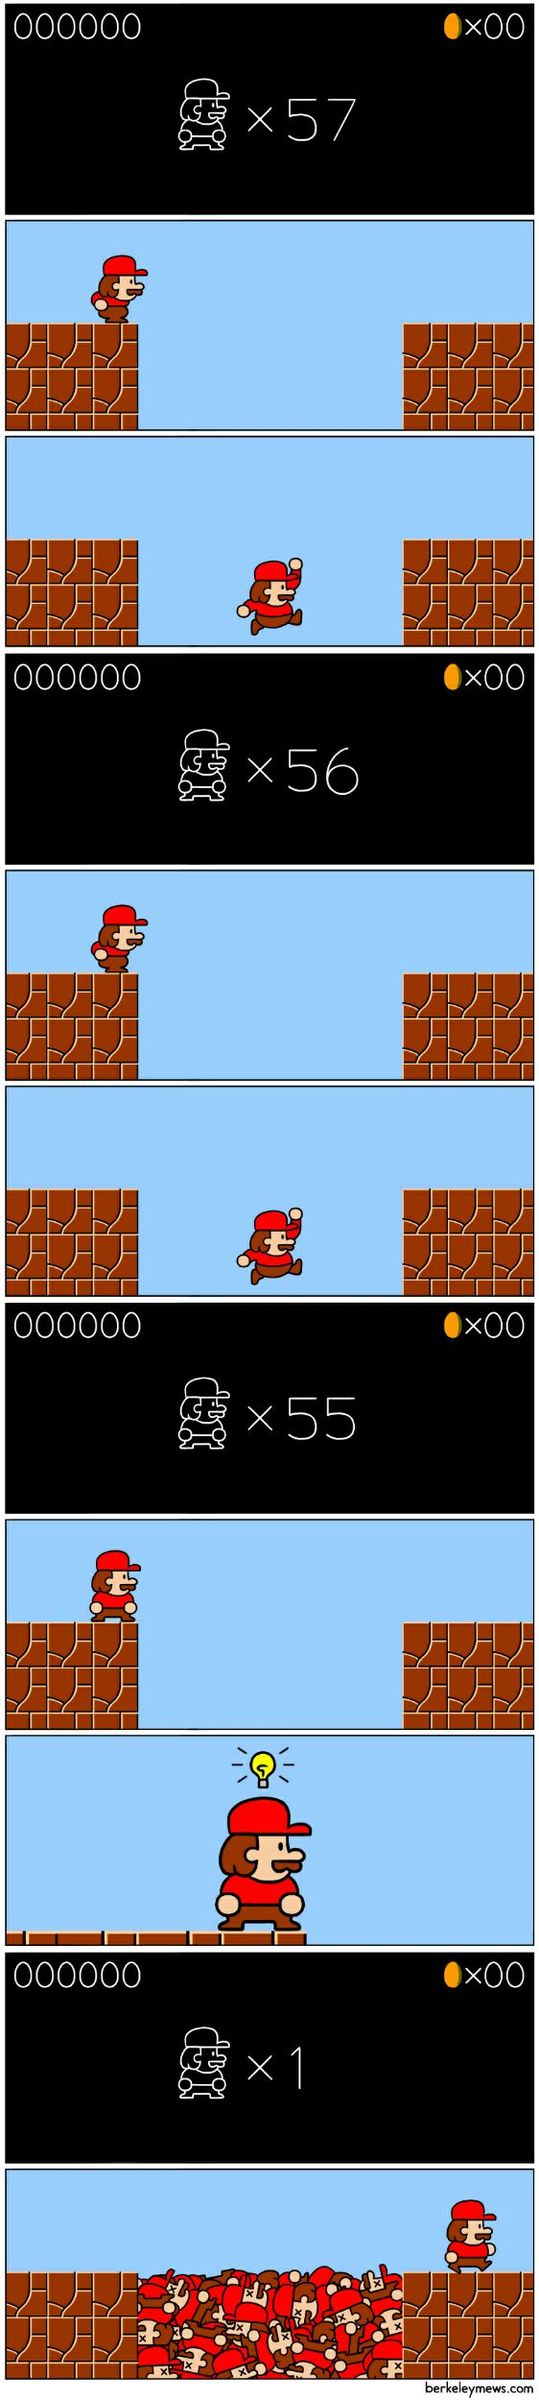 how to play Mario - meme